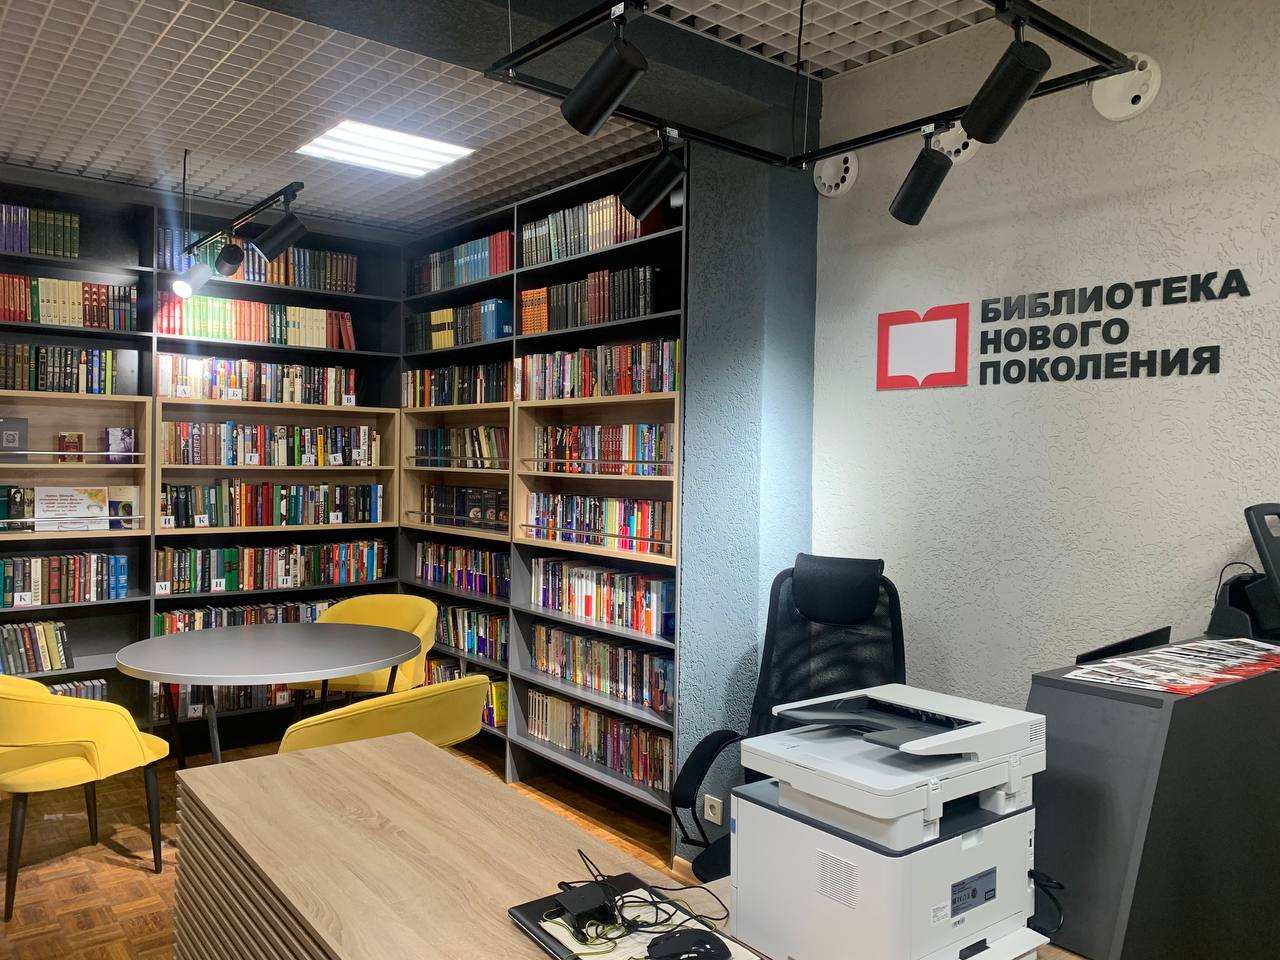 13 библиотек модернизируют в Нижегородской области до конца 2023 года - фото 1